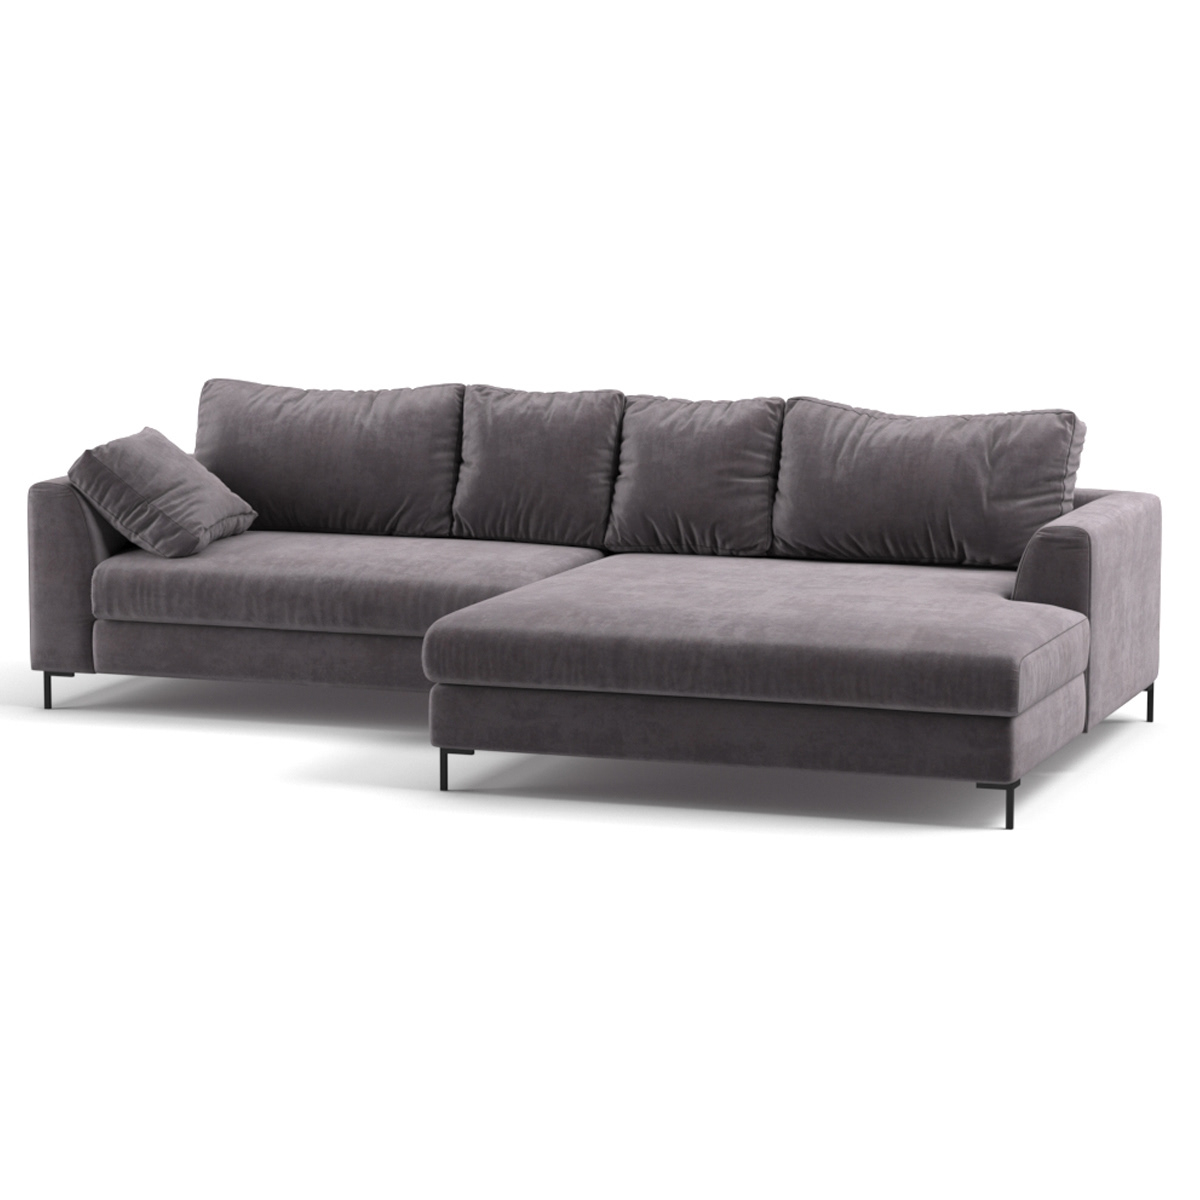 3dsmax corona renderer kare design sofa gianna velvet